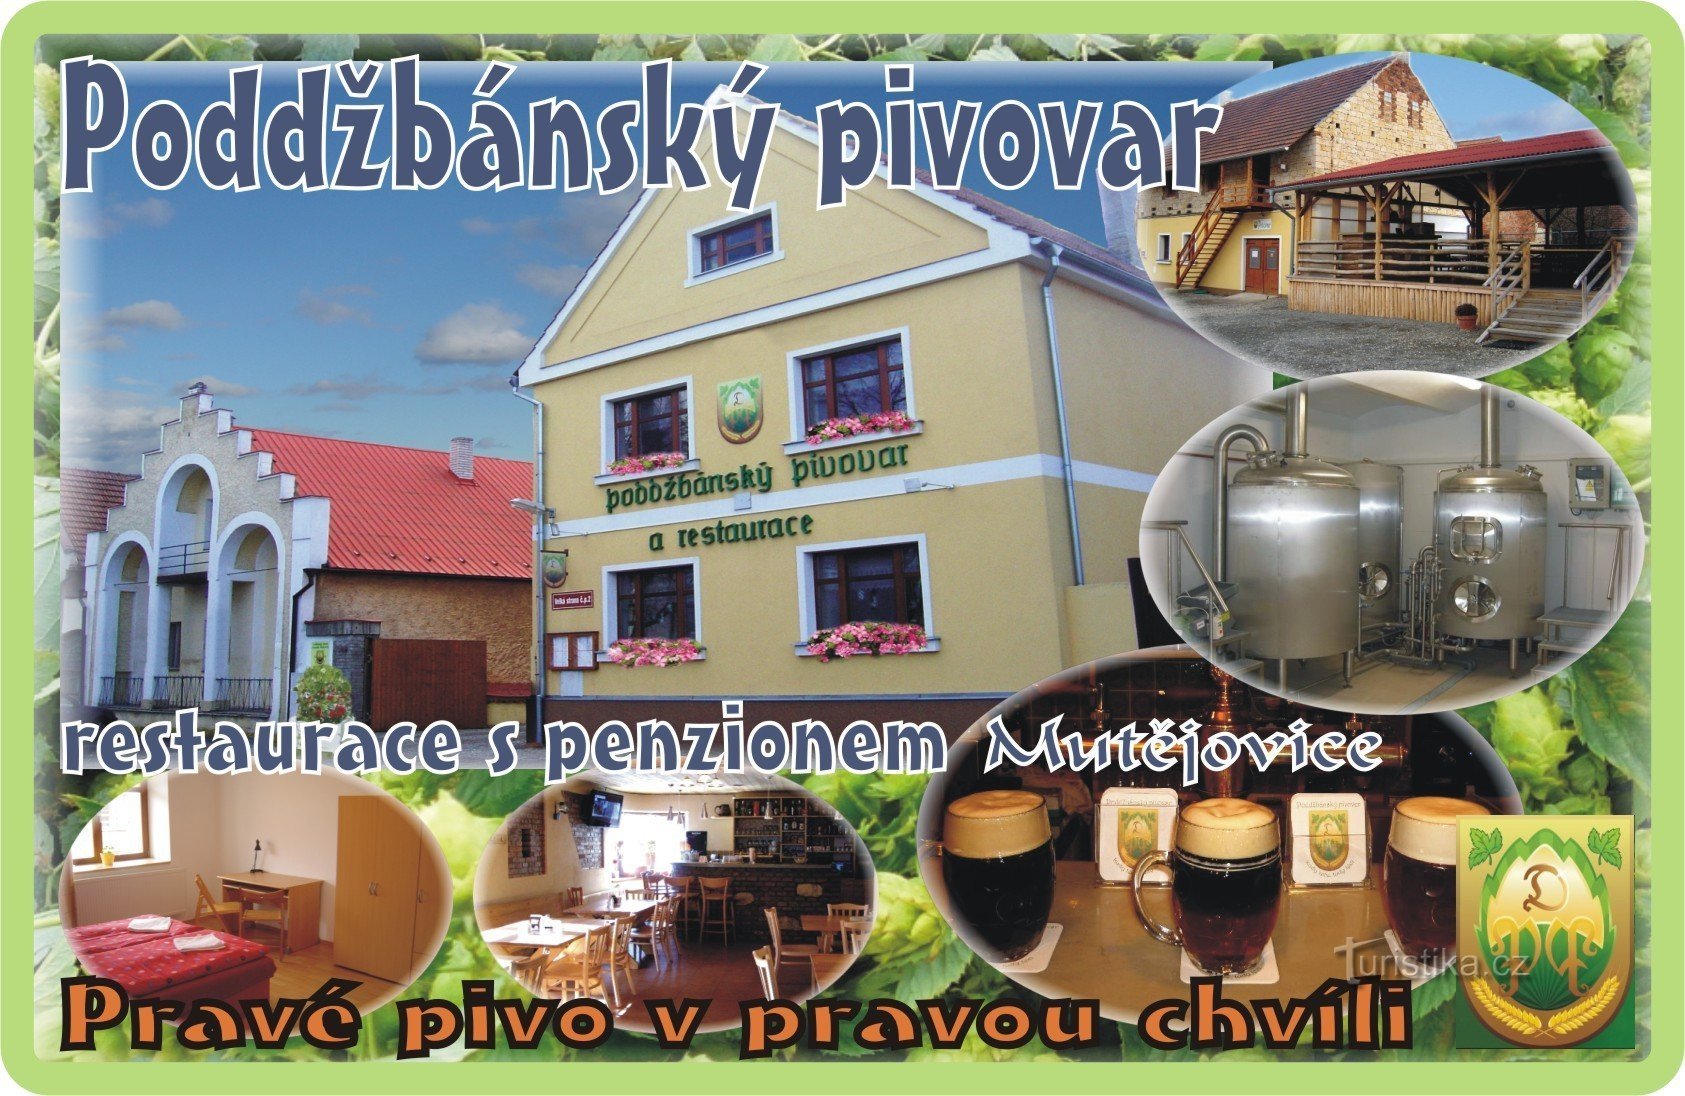 Mutějovice Poddžbán brewery and restaurant with boarding house